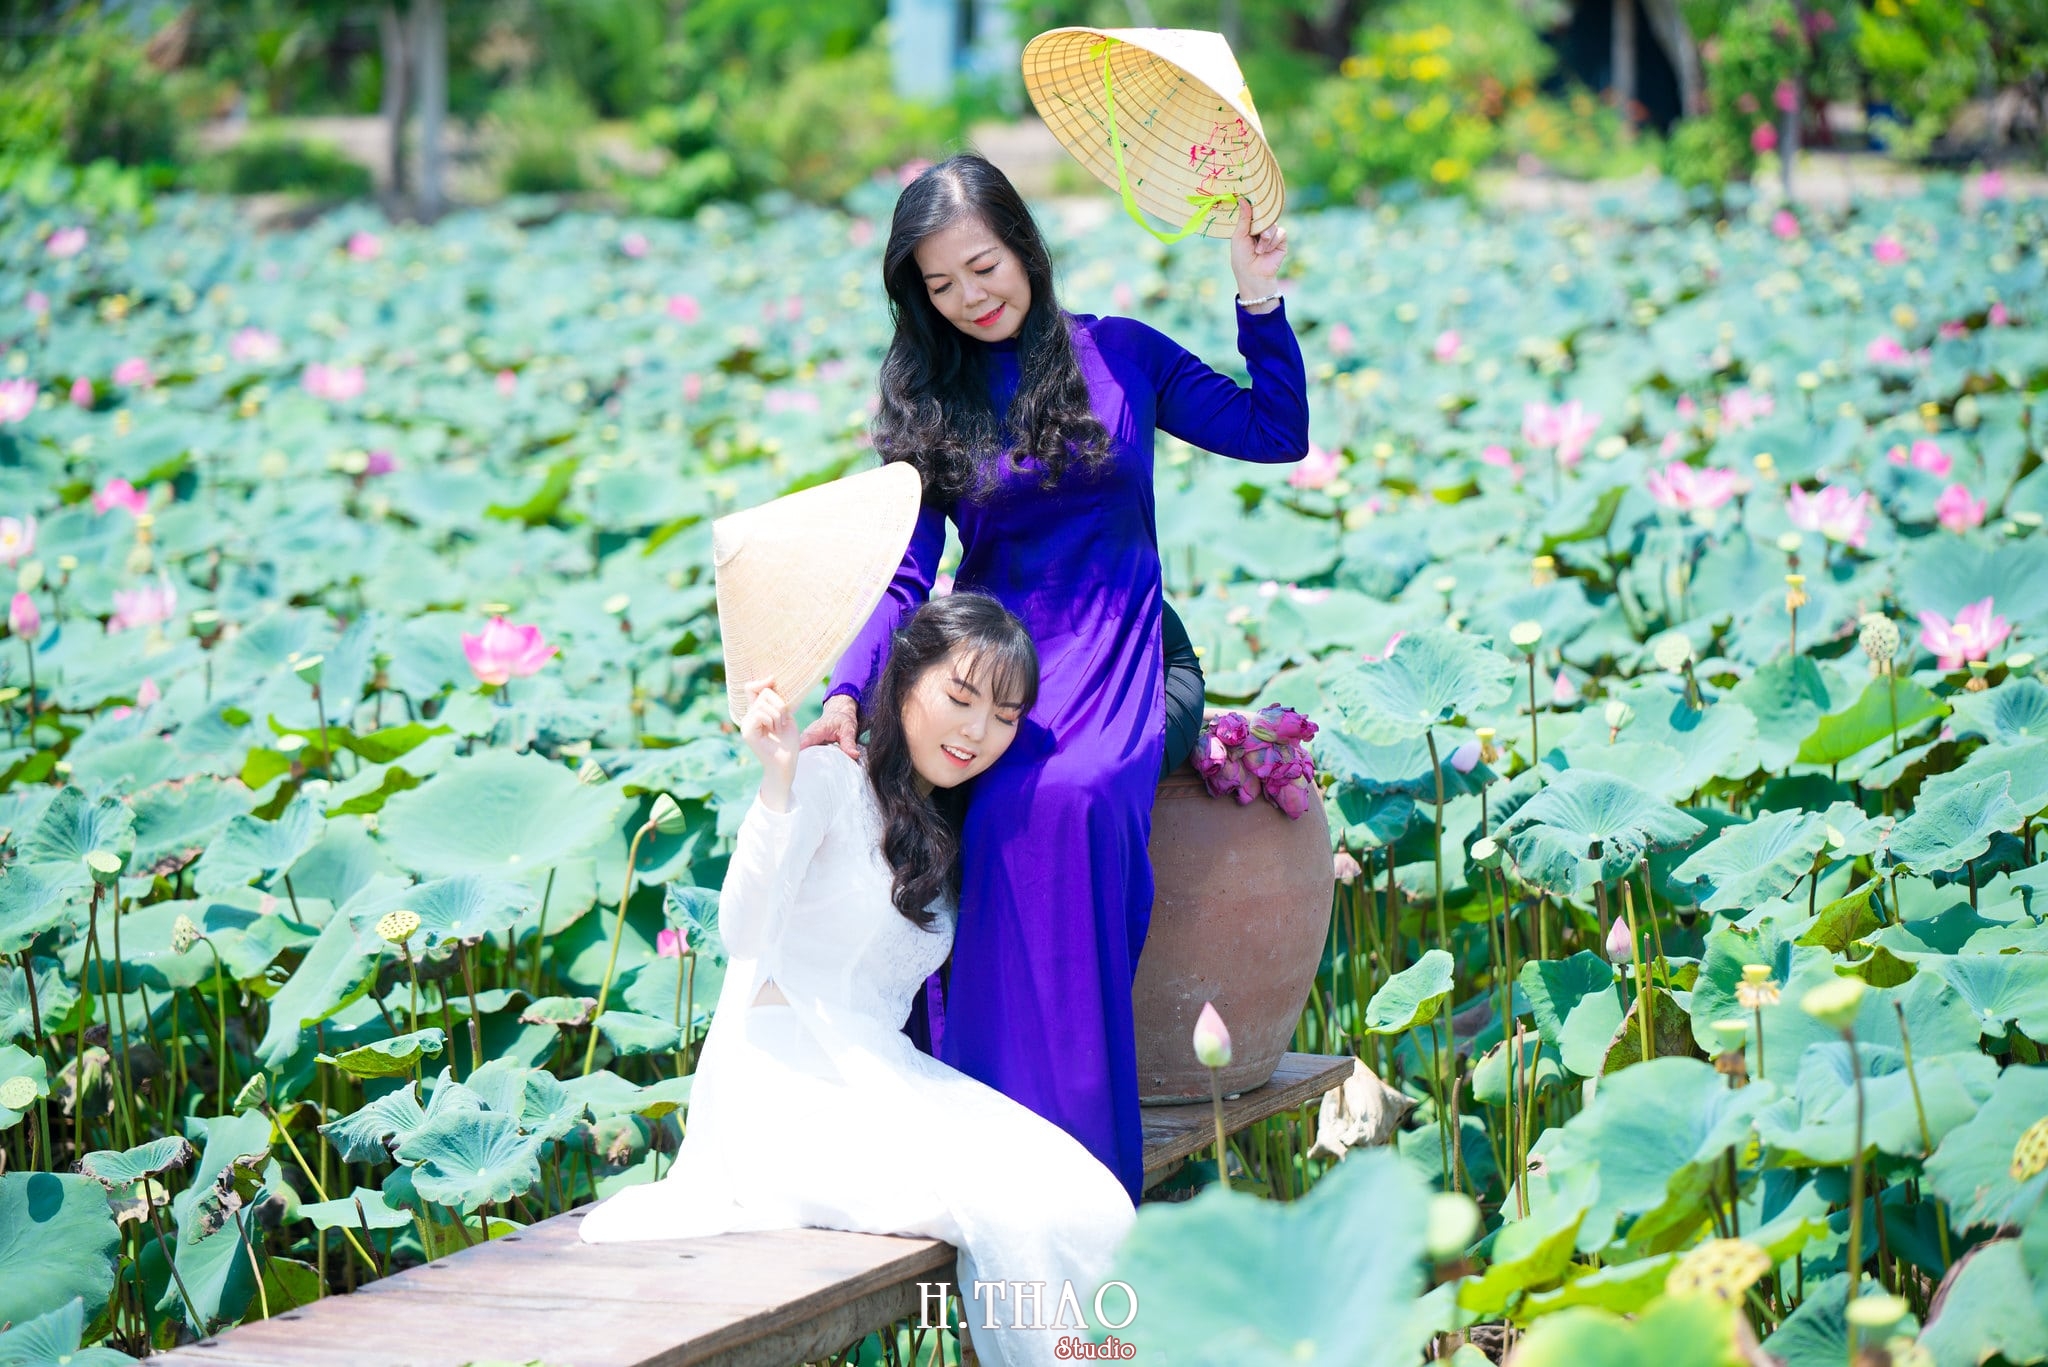 %E1%BA%A2nh %C3%A1o d%C3%A0i hoa sen 21 - 49 cách tạo dáng chụp ảnh với áo dài tuyệt đẹp - HThao Studio